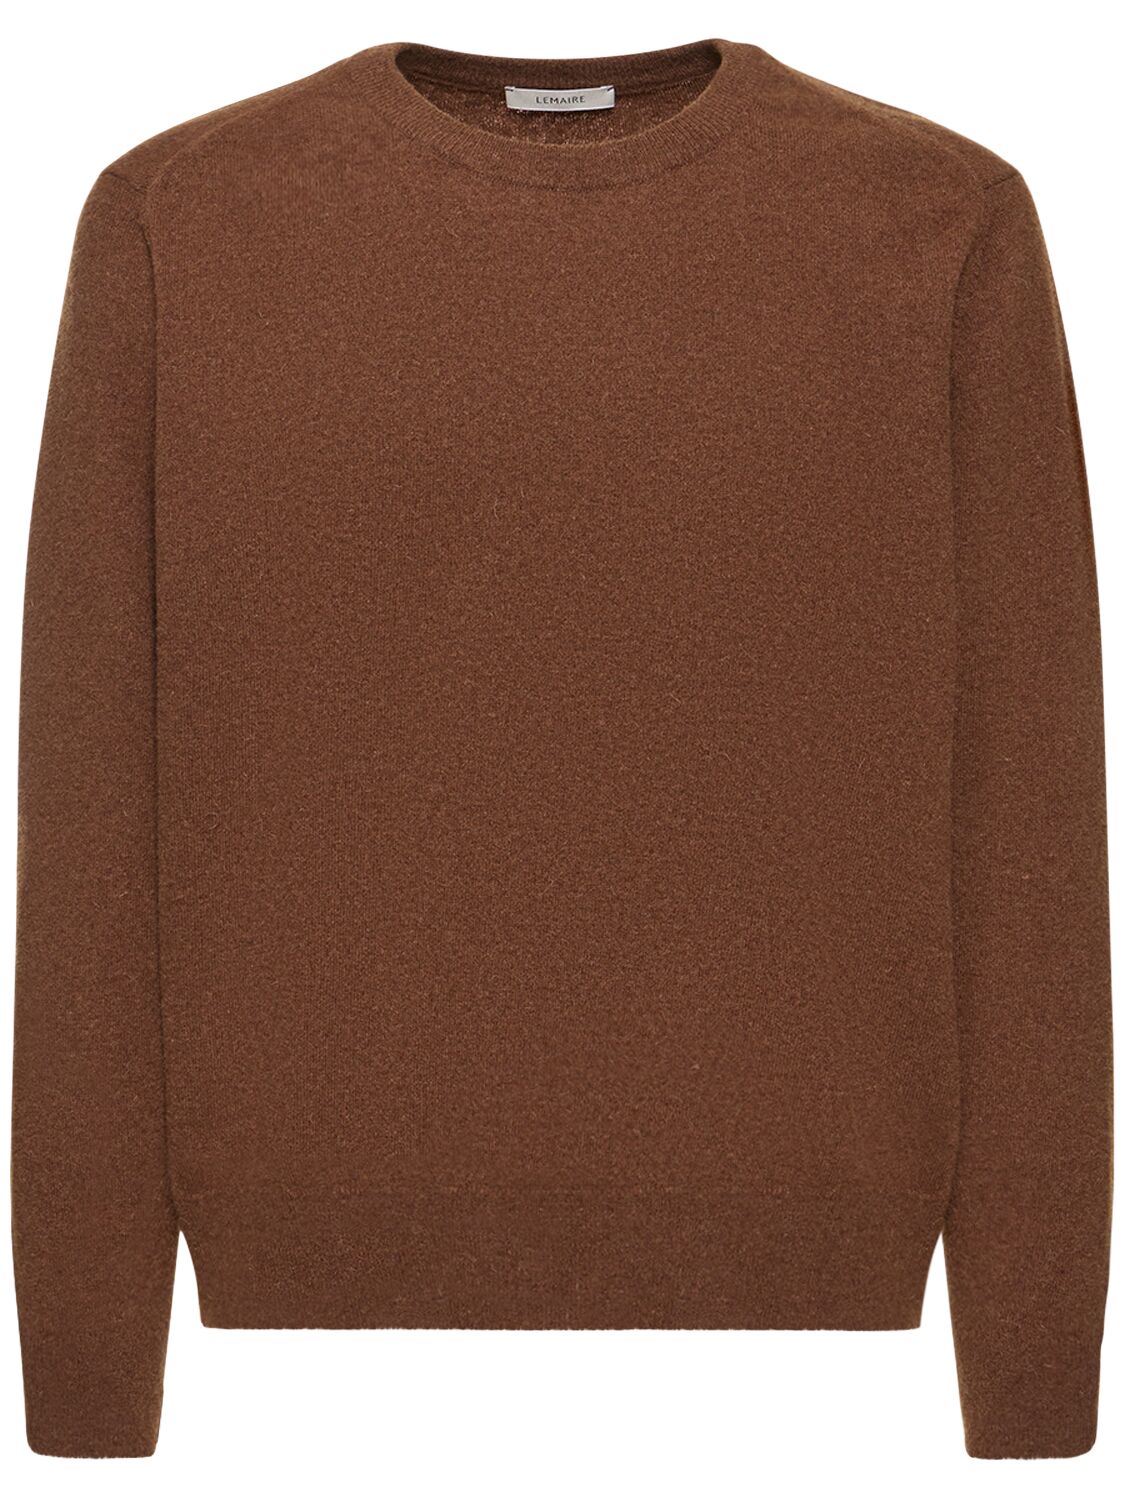 Wide Neck Wool Blend Knit Sweater – MEN > CLOTHING > KNITWEAR